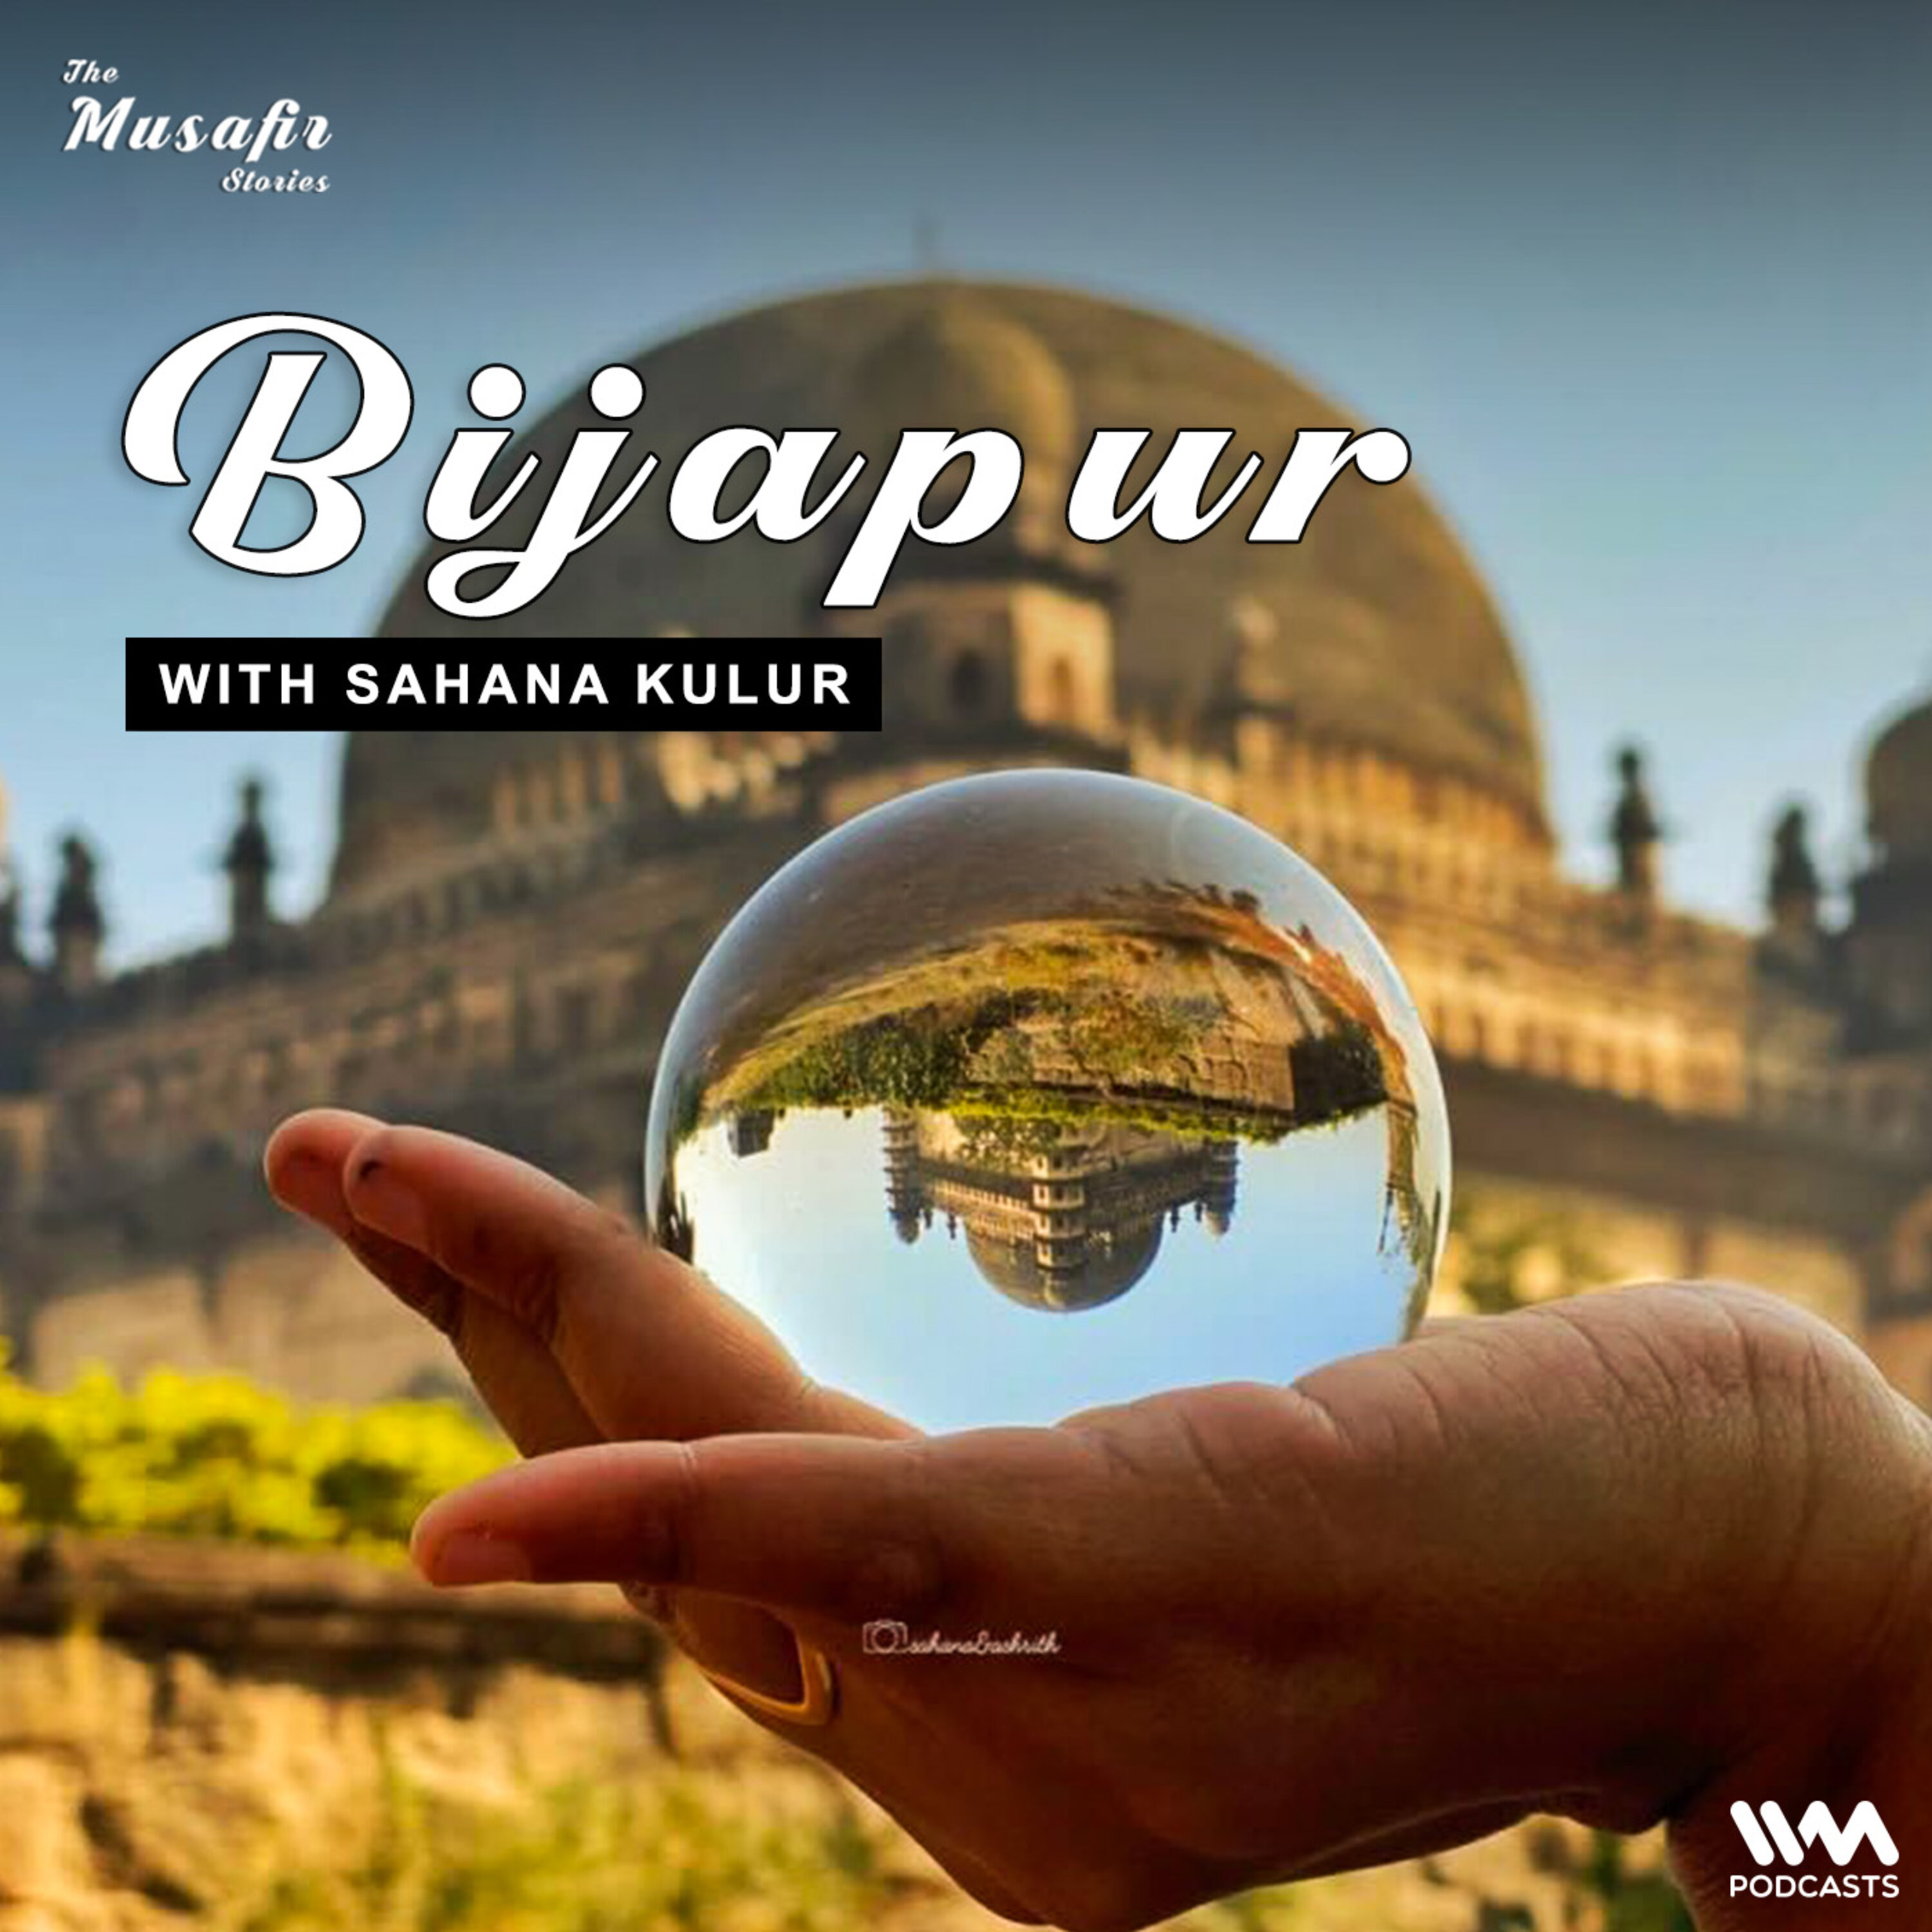 Bijapur with Sahana Kulur